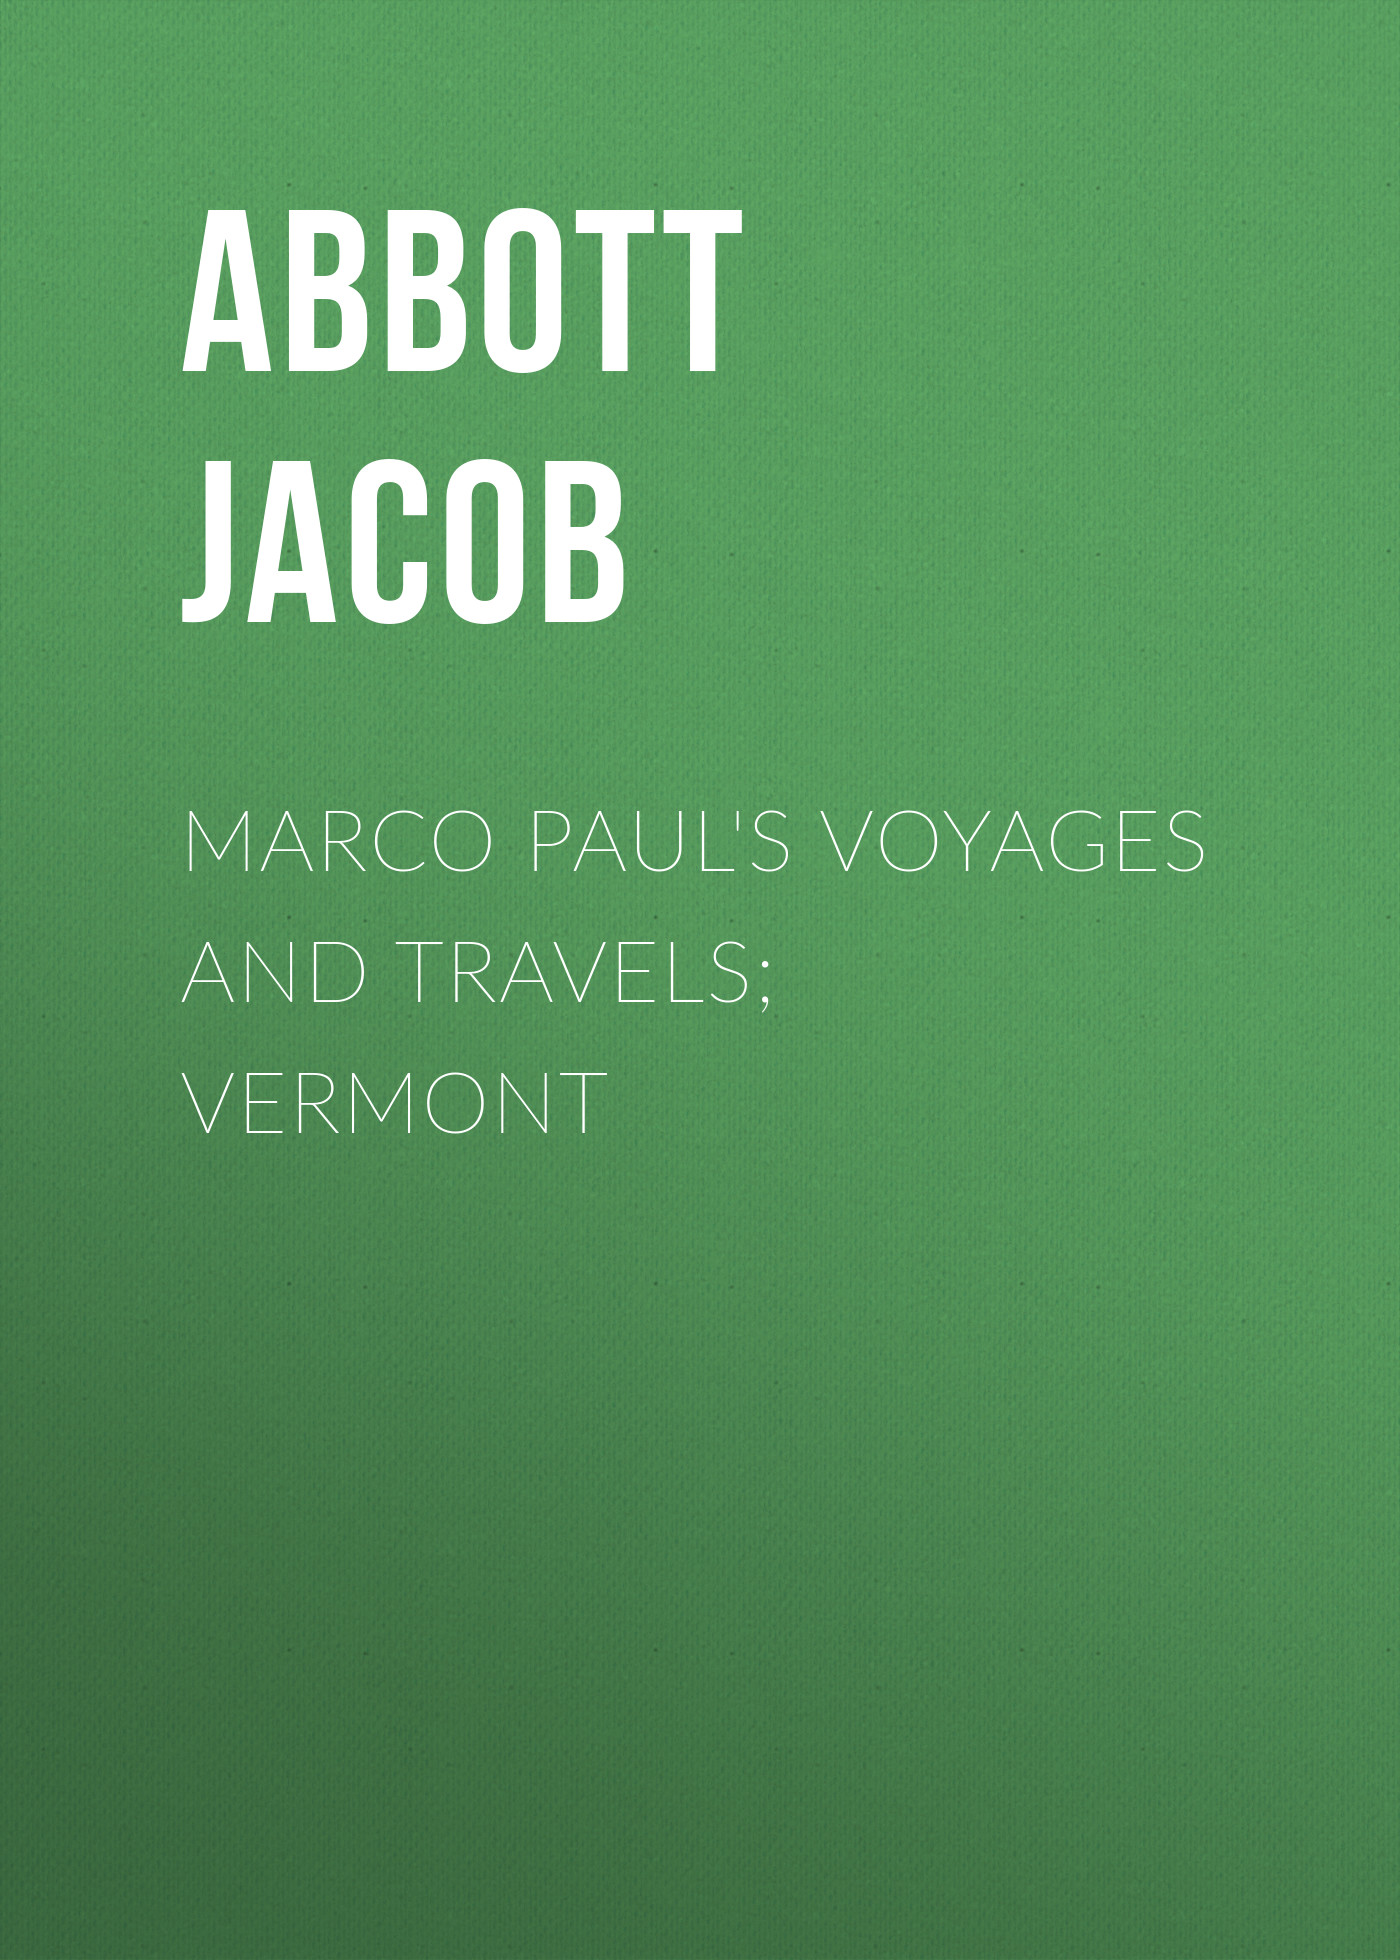 Книга Marco Paul's Voyages and Travels; Vermont из серии , созданная Jacob Abbott, может относится к жанру Книги о Путешествиях, История, Зарубежная образовательная литература, Зарубежная старинная литература, Зарубежная классика. Стоимость электронной книги Marco Paul's Voyages and Travels; Vermont с идентификатором 36363366 составляет 0 руб.